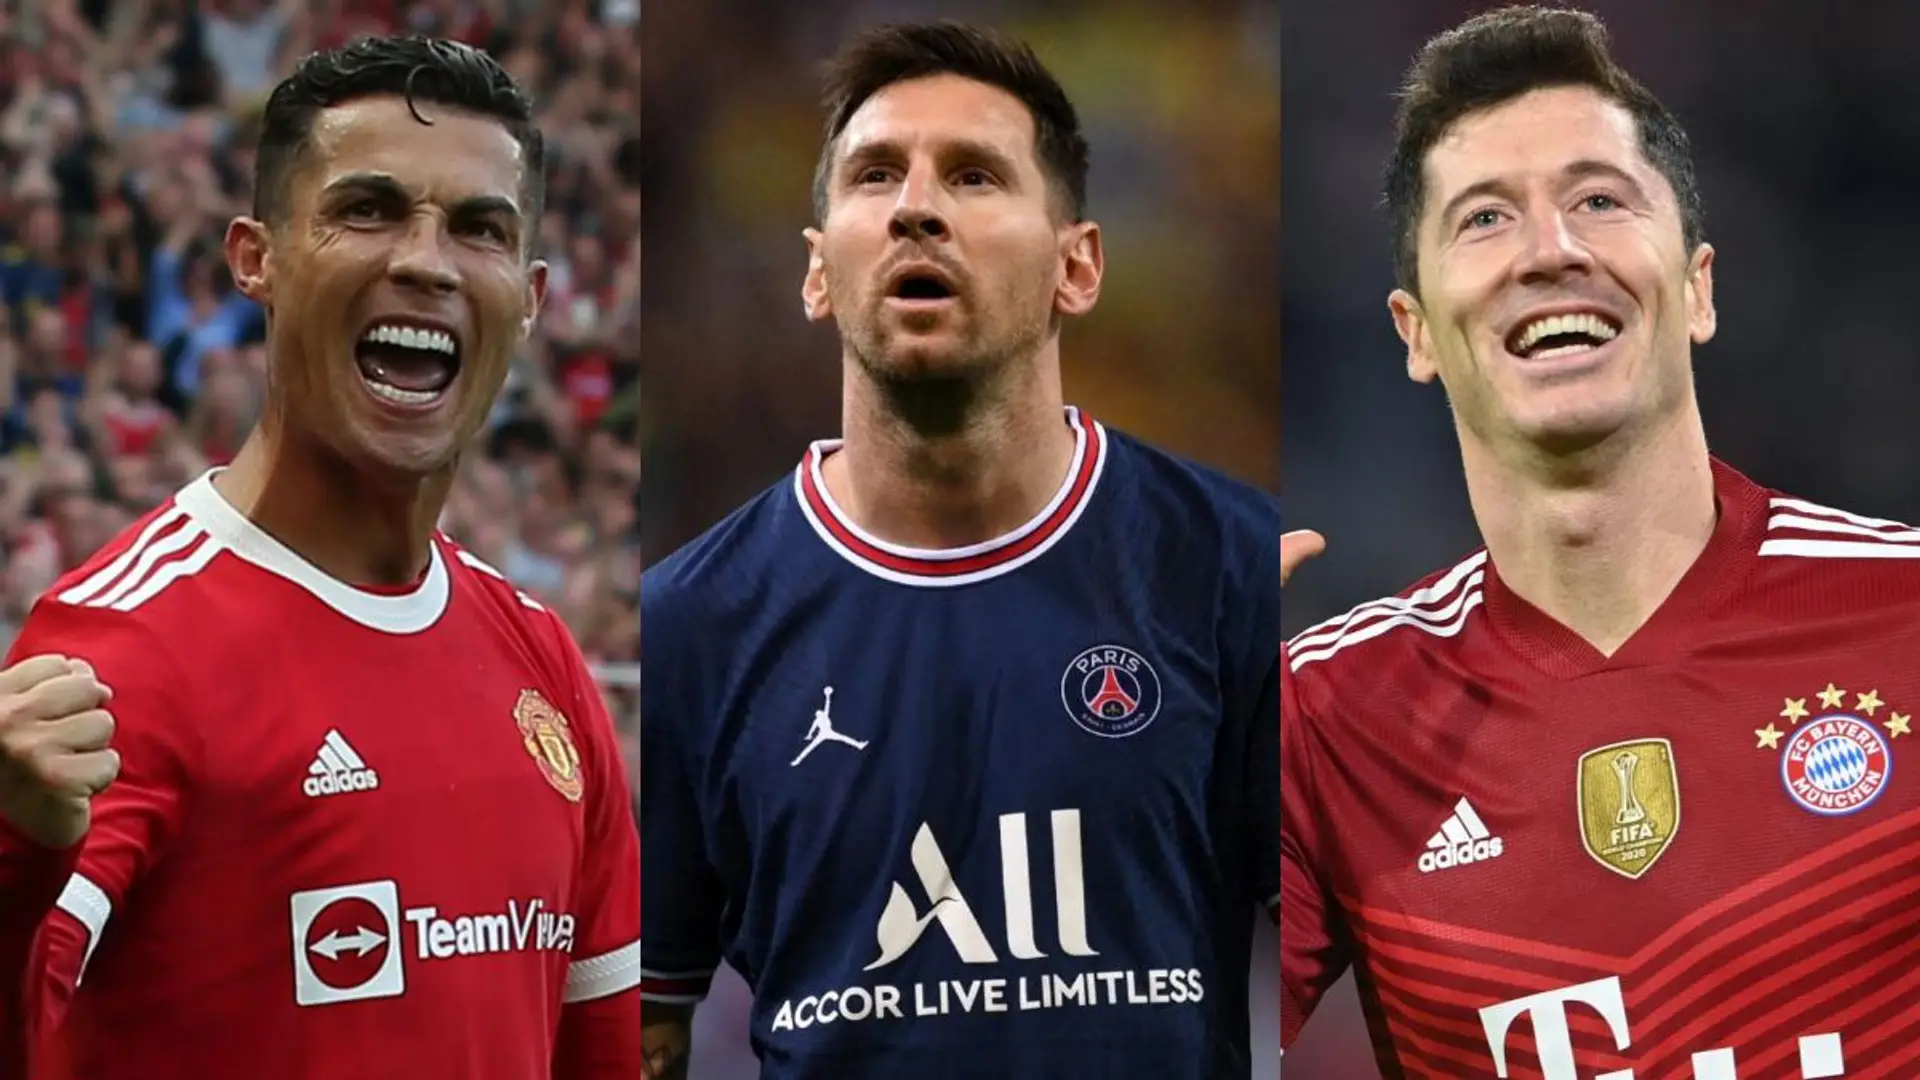 Experte erklärt, warum Lewandowski gegen Messi und Ronaldo keine Chance hat